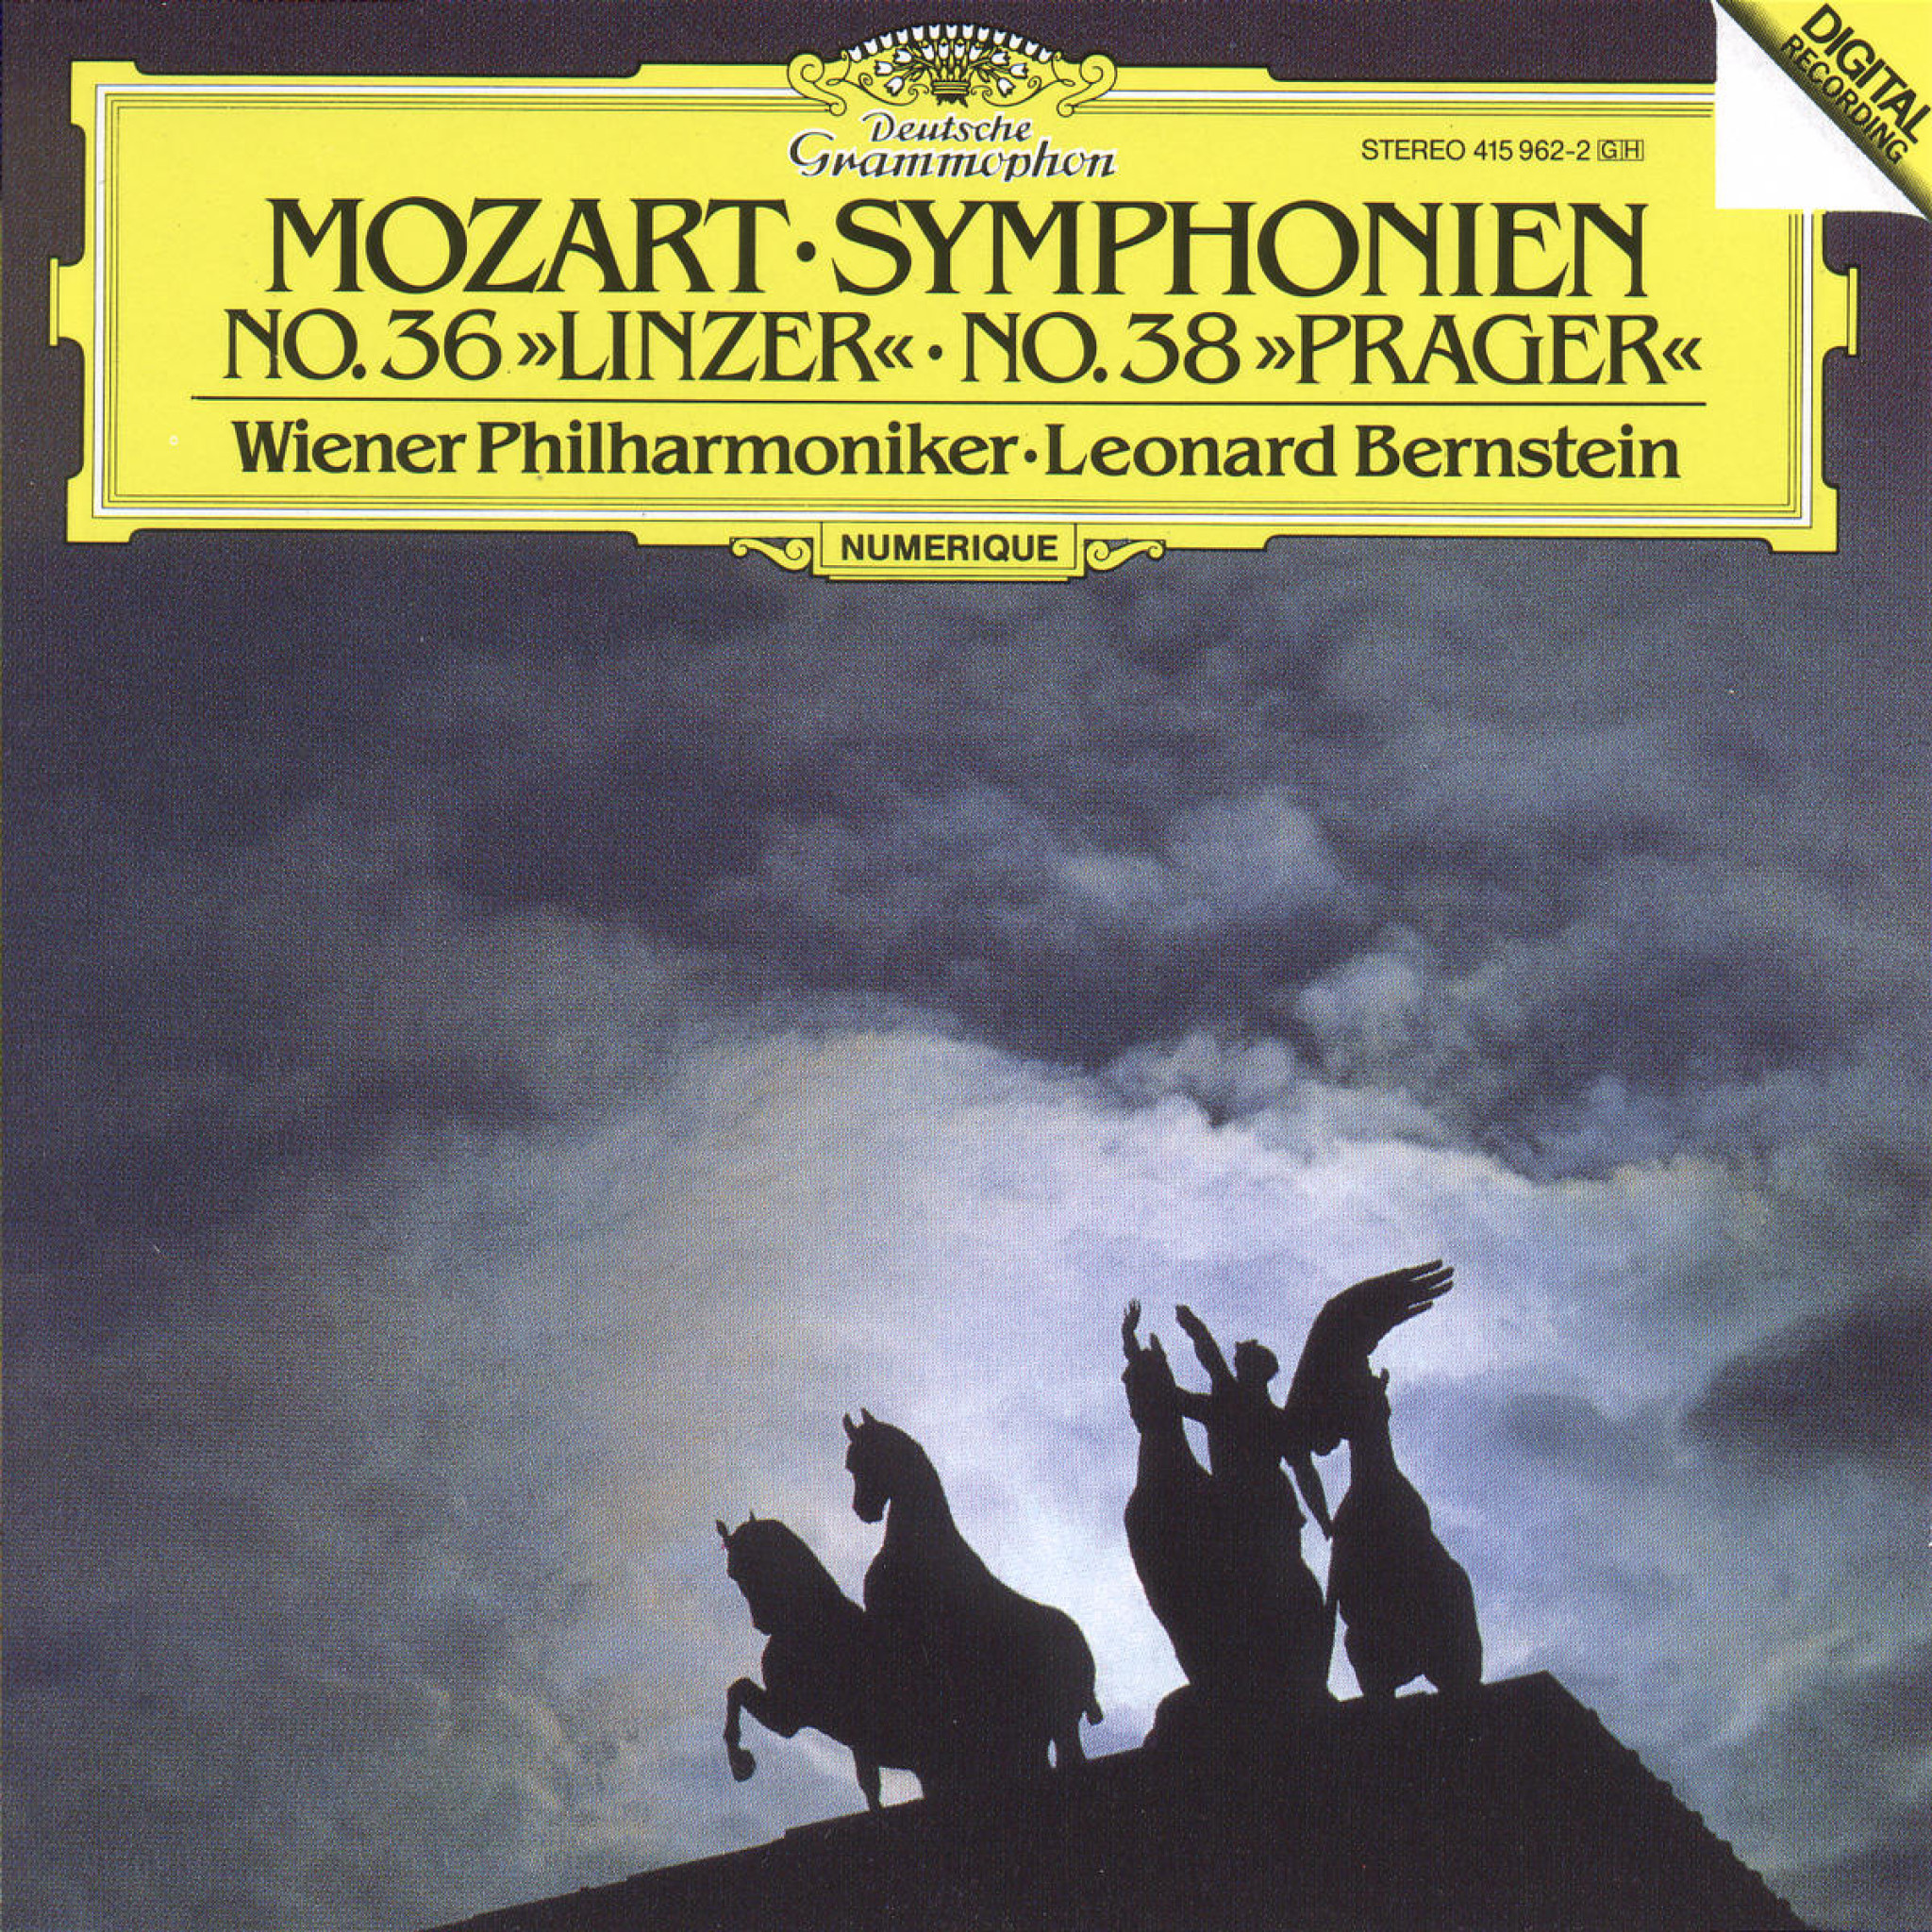 Mozart: Symphony No.36 "Linzer" & No.38 "Prague" 0028941596224